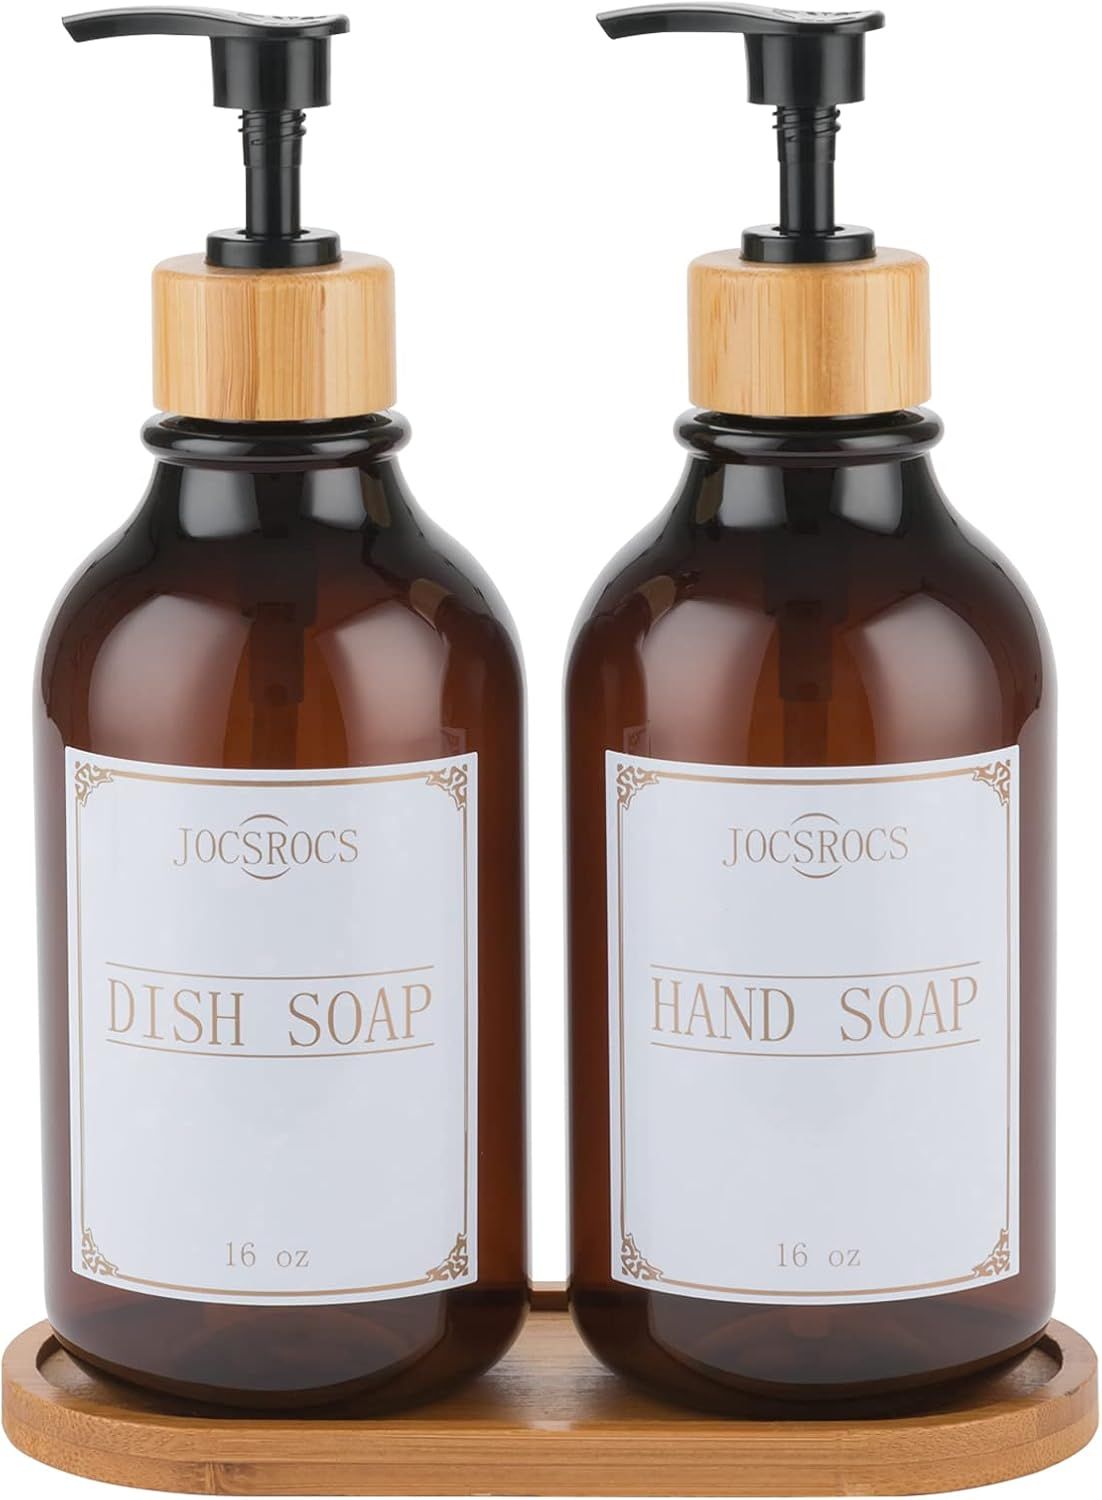 2 Pack Dish Soap Dispenser for Kitchen Sink, 16 Oz Hand Soap Dispenser with Bamboo Pump and Soap ... | Amazon (US)